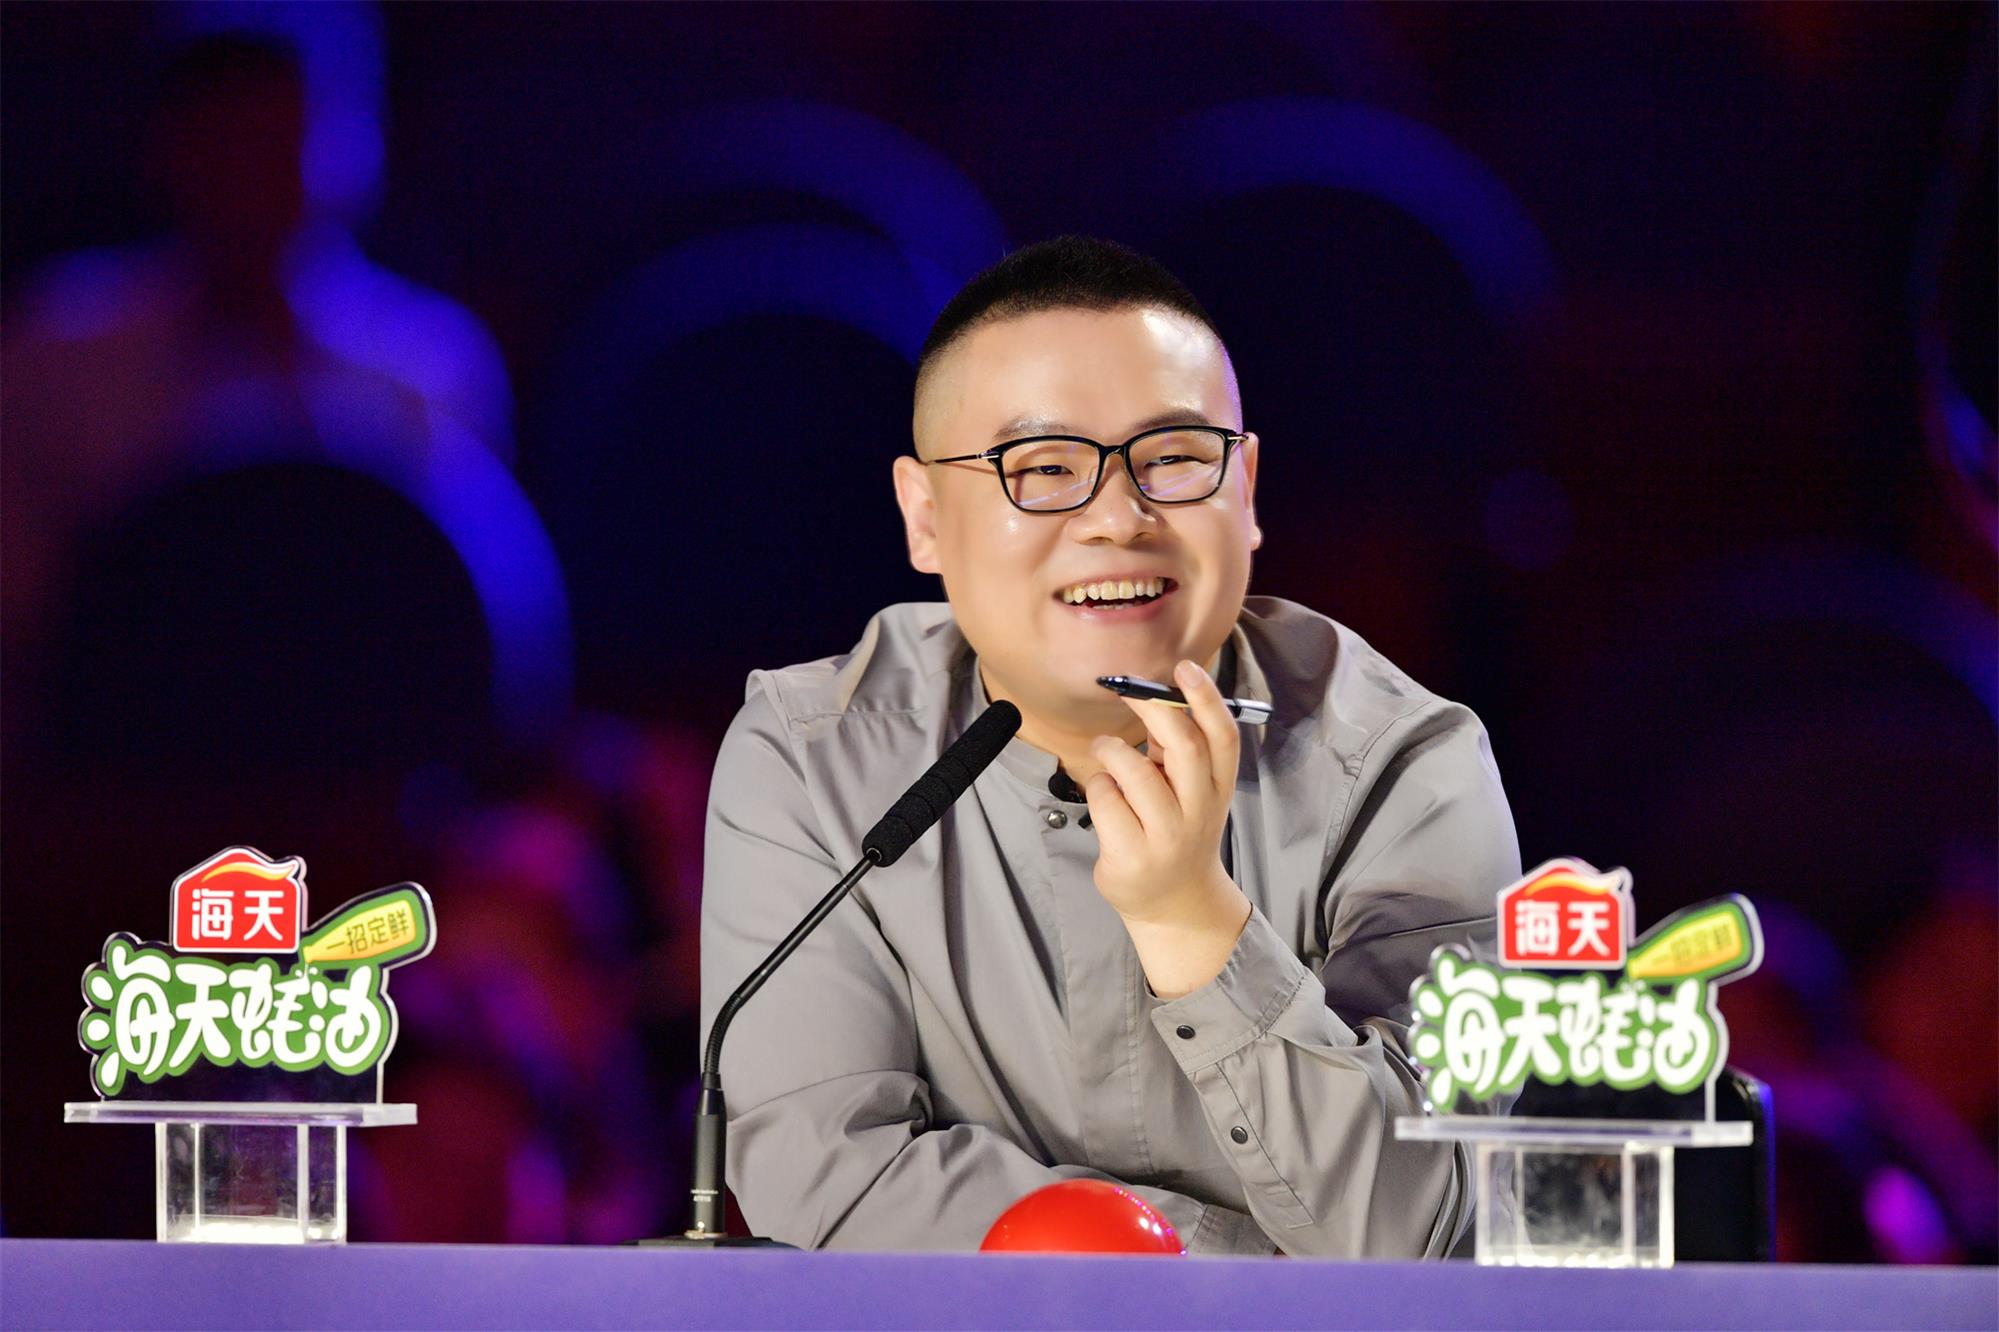 《中国达人秀》第六季由海天蚝油独家冠名,方太特约赞助播出